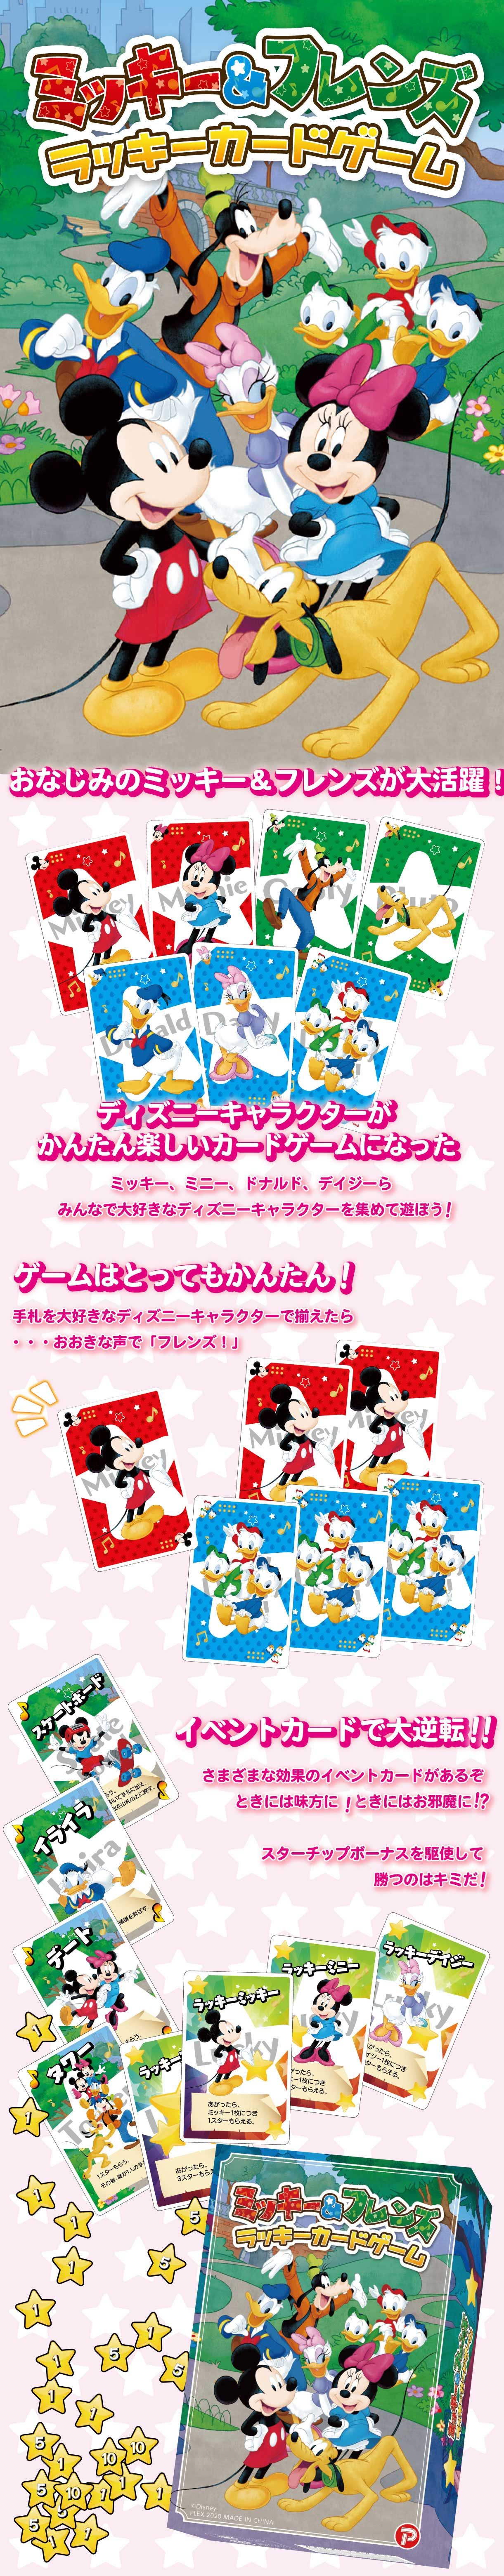 ミッキー フレンズ ラッキーカードゲーム ディズニーキャラクター おもちゃ プレミアムバンダイ公式通販